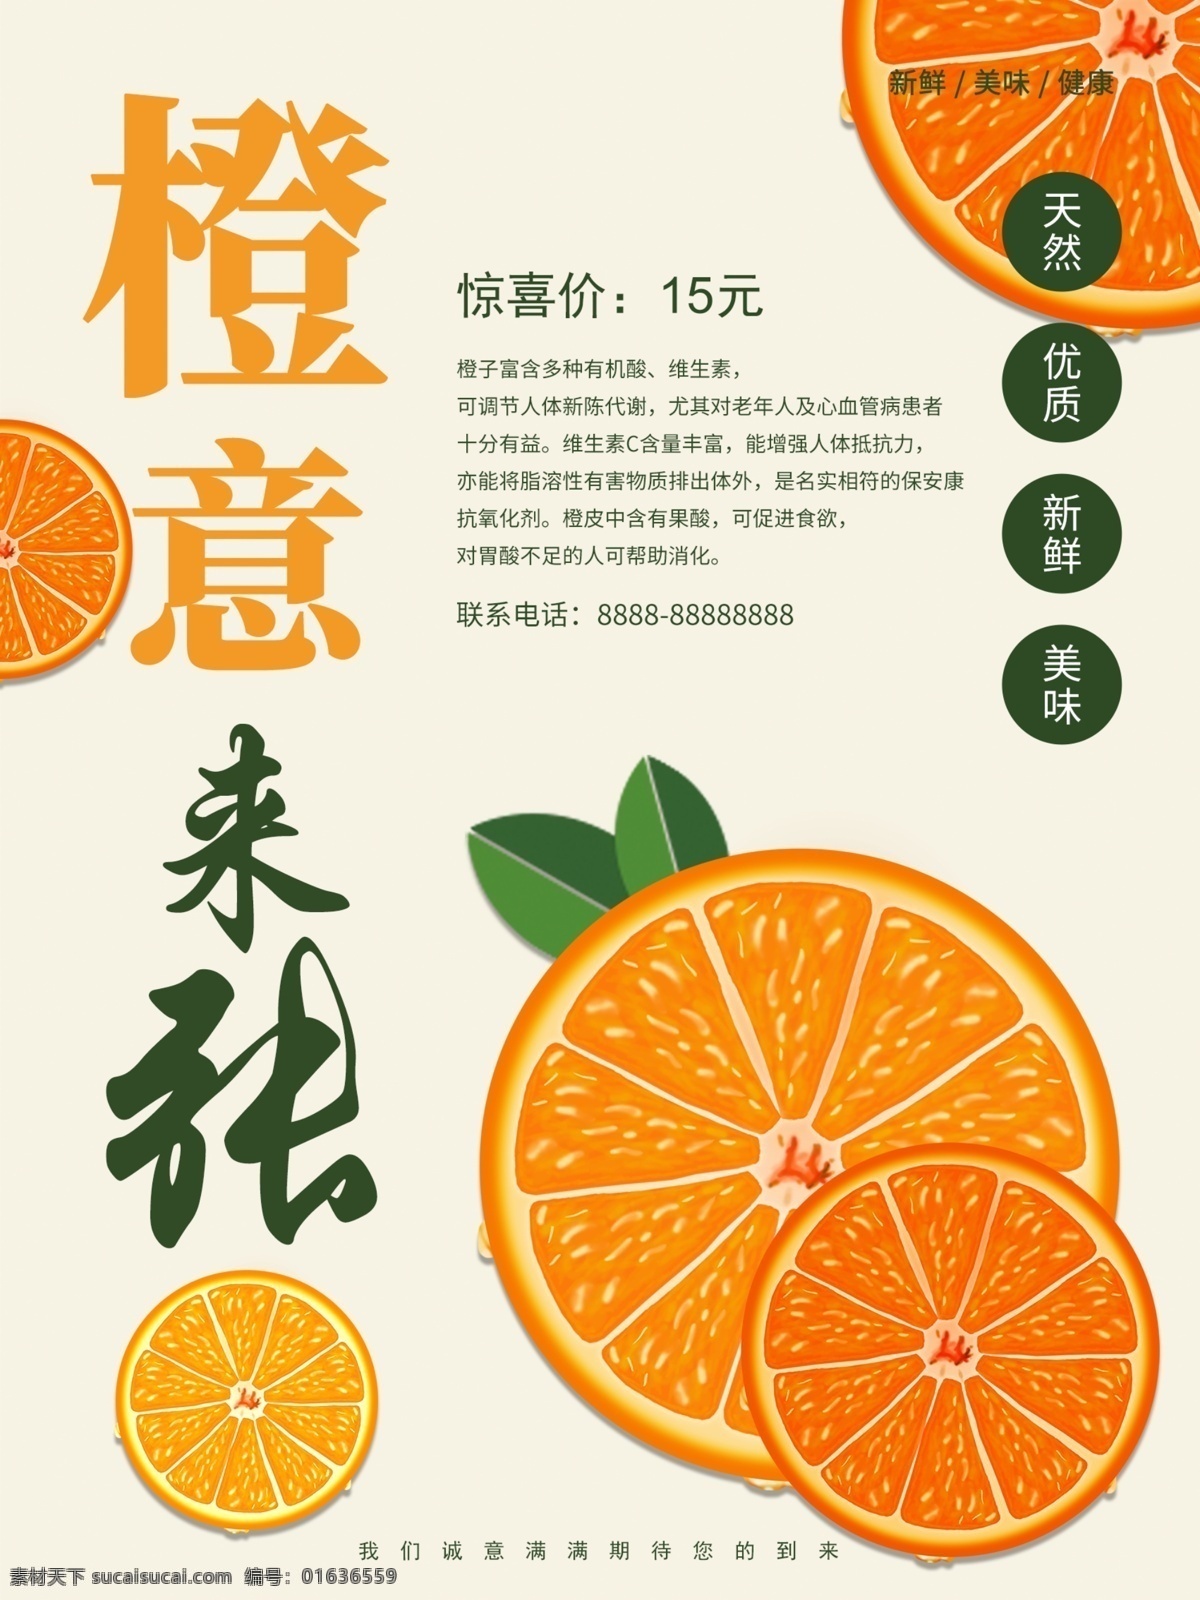 原创 简约 创意 橙 意 张 橙子 新鲜 水果 促销 海报 促销海报 健康 可爱 橙意来张 水果促销海报 新鲜水果 橙子新鲜水果 橙子促销海报 美味 特惠 优惠 手绘 橘子 桔子